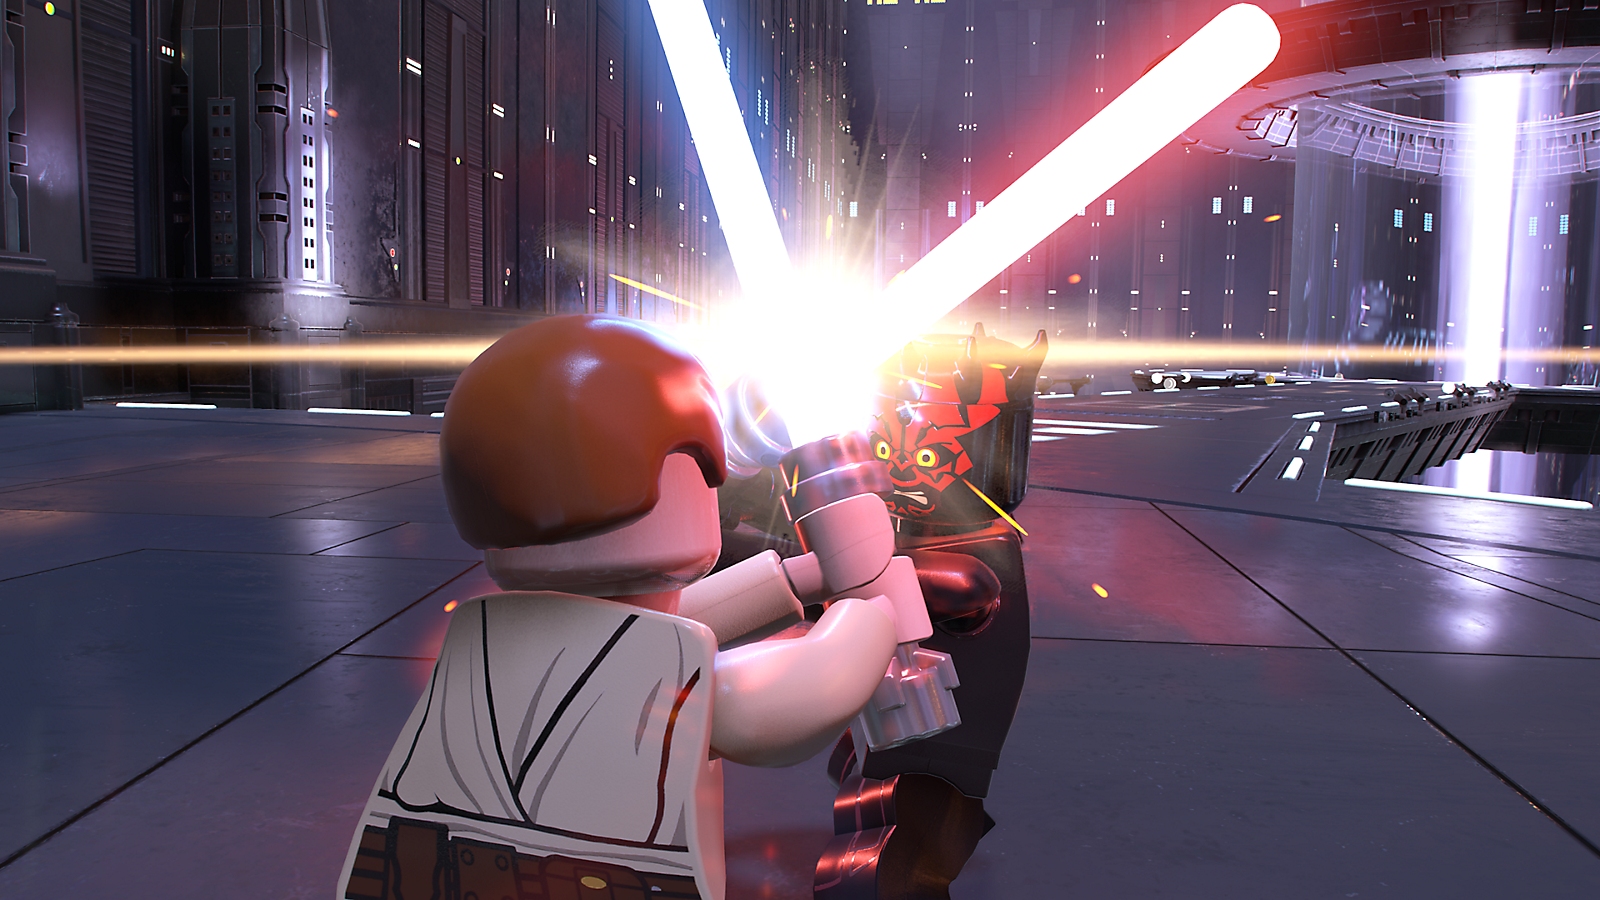 بازی Lego Star Wars: The Skywalker Saga برای PS5